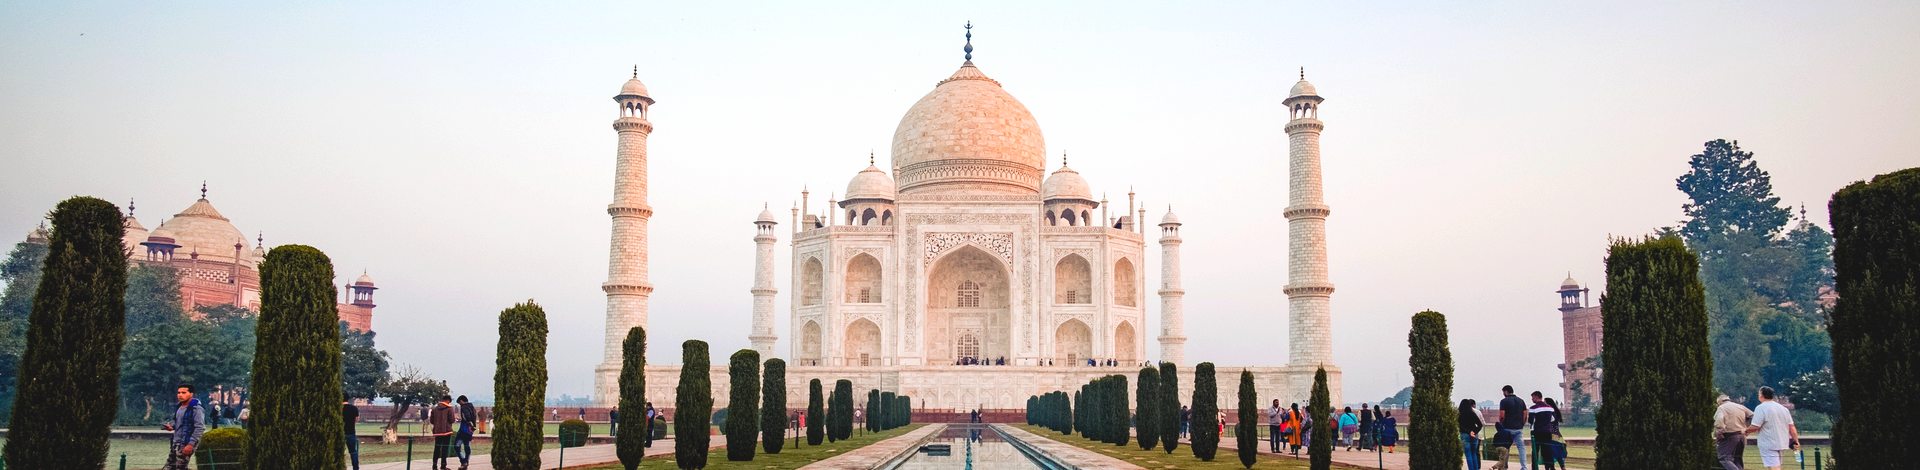 Taj Mahal Agra Rajasthan - Asie Online